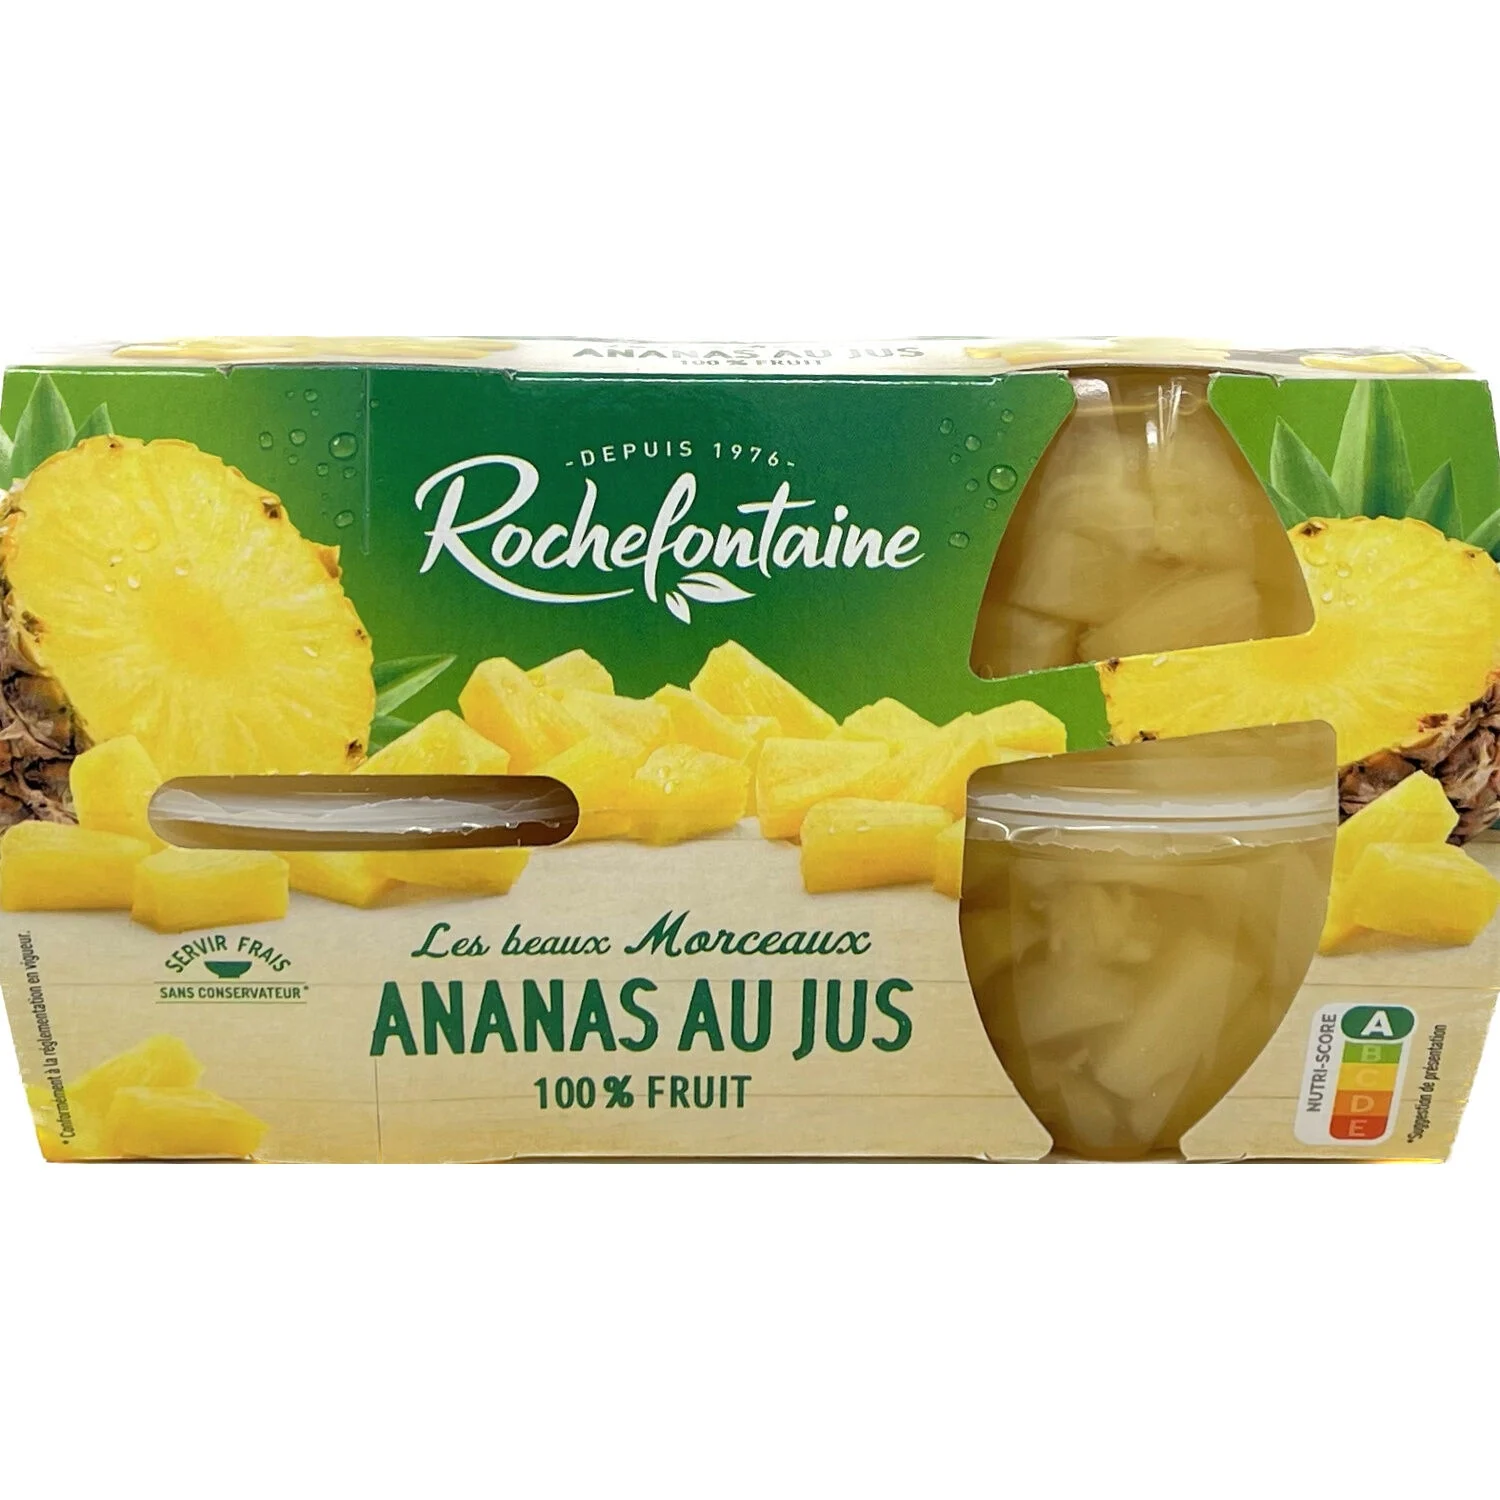 4x120ml Ananas Au Jus Rochefon